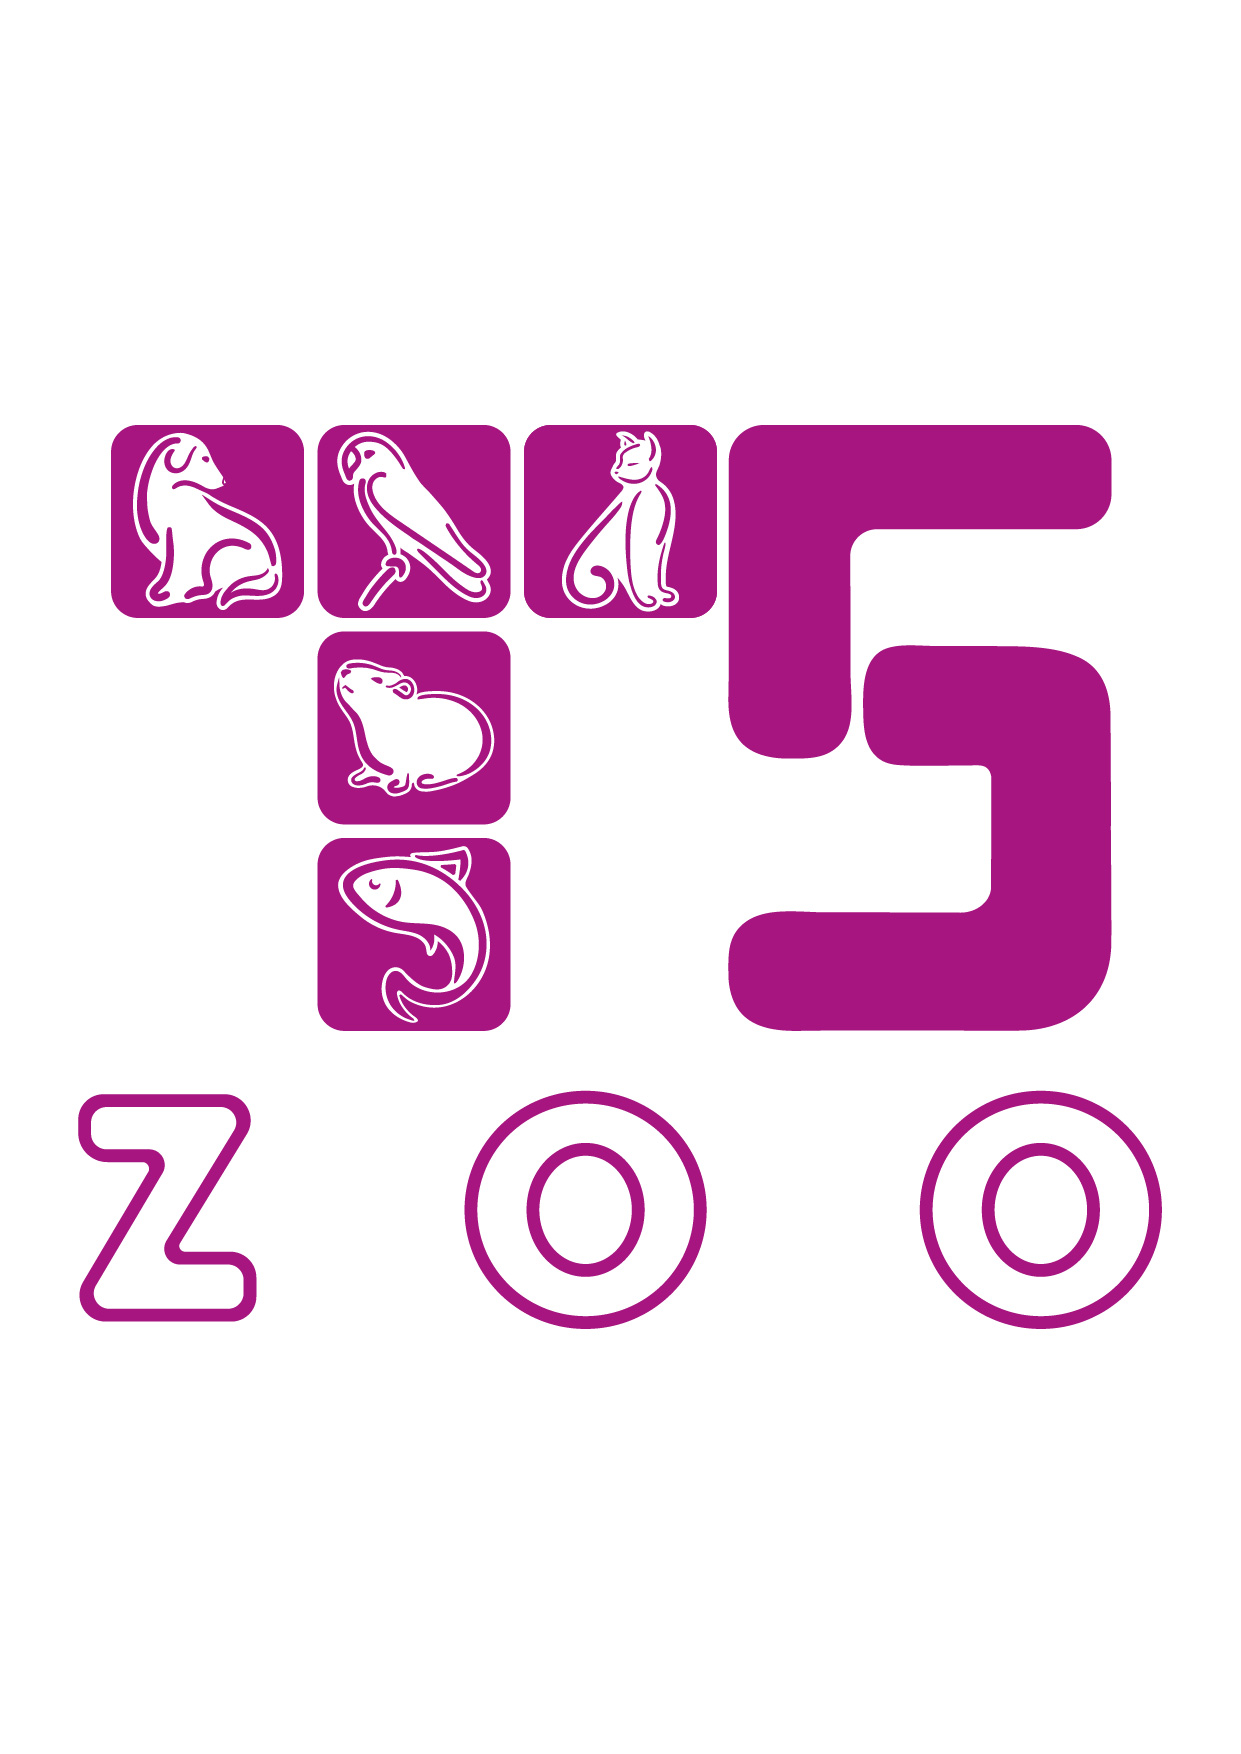 Zoo Ru Официальный Сайт Интернет Магазин